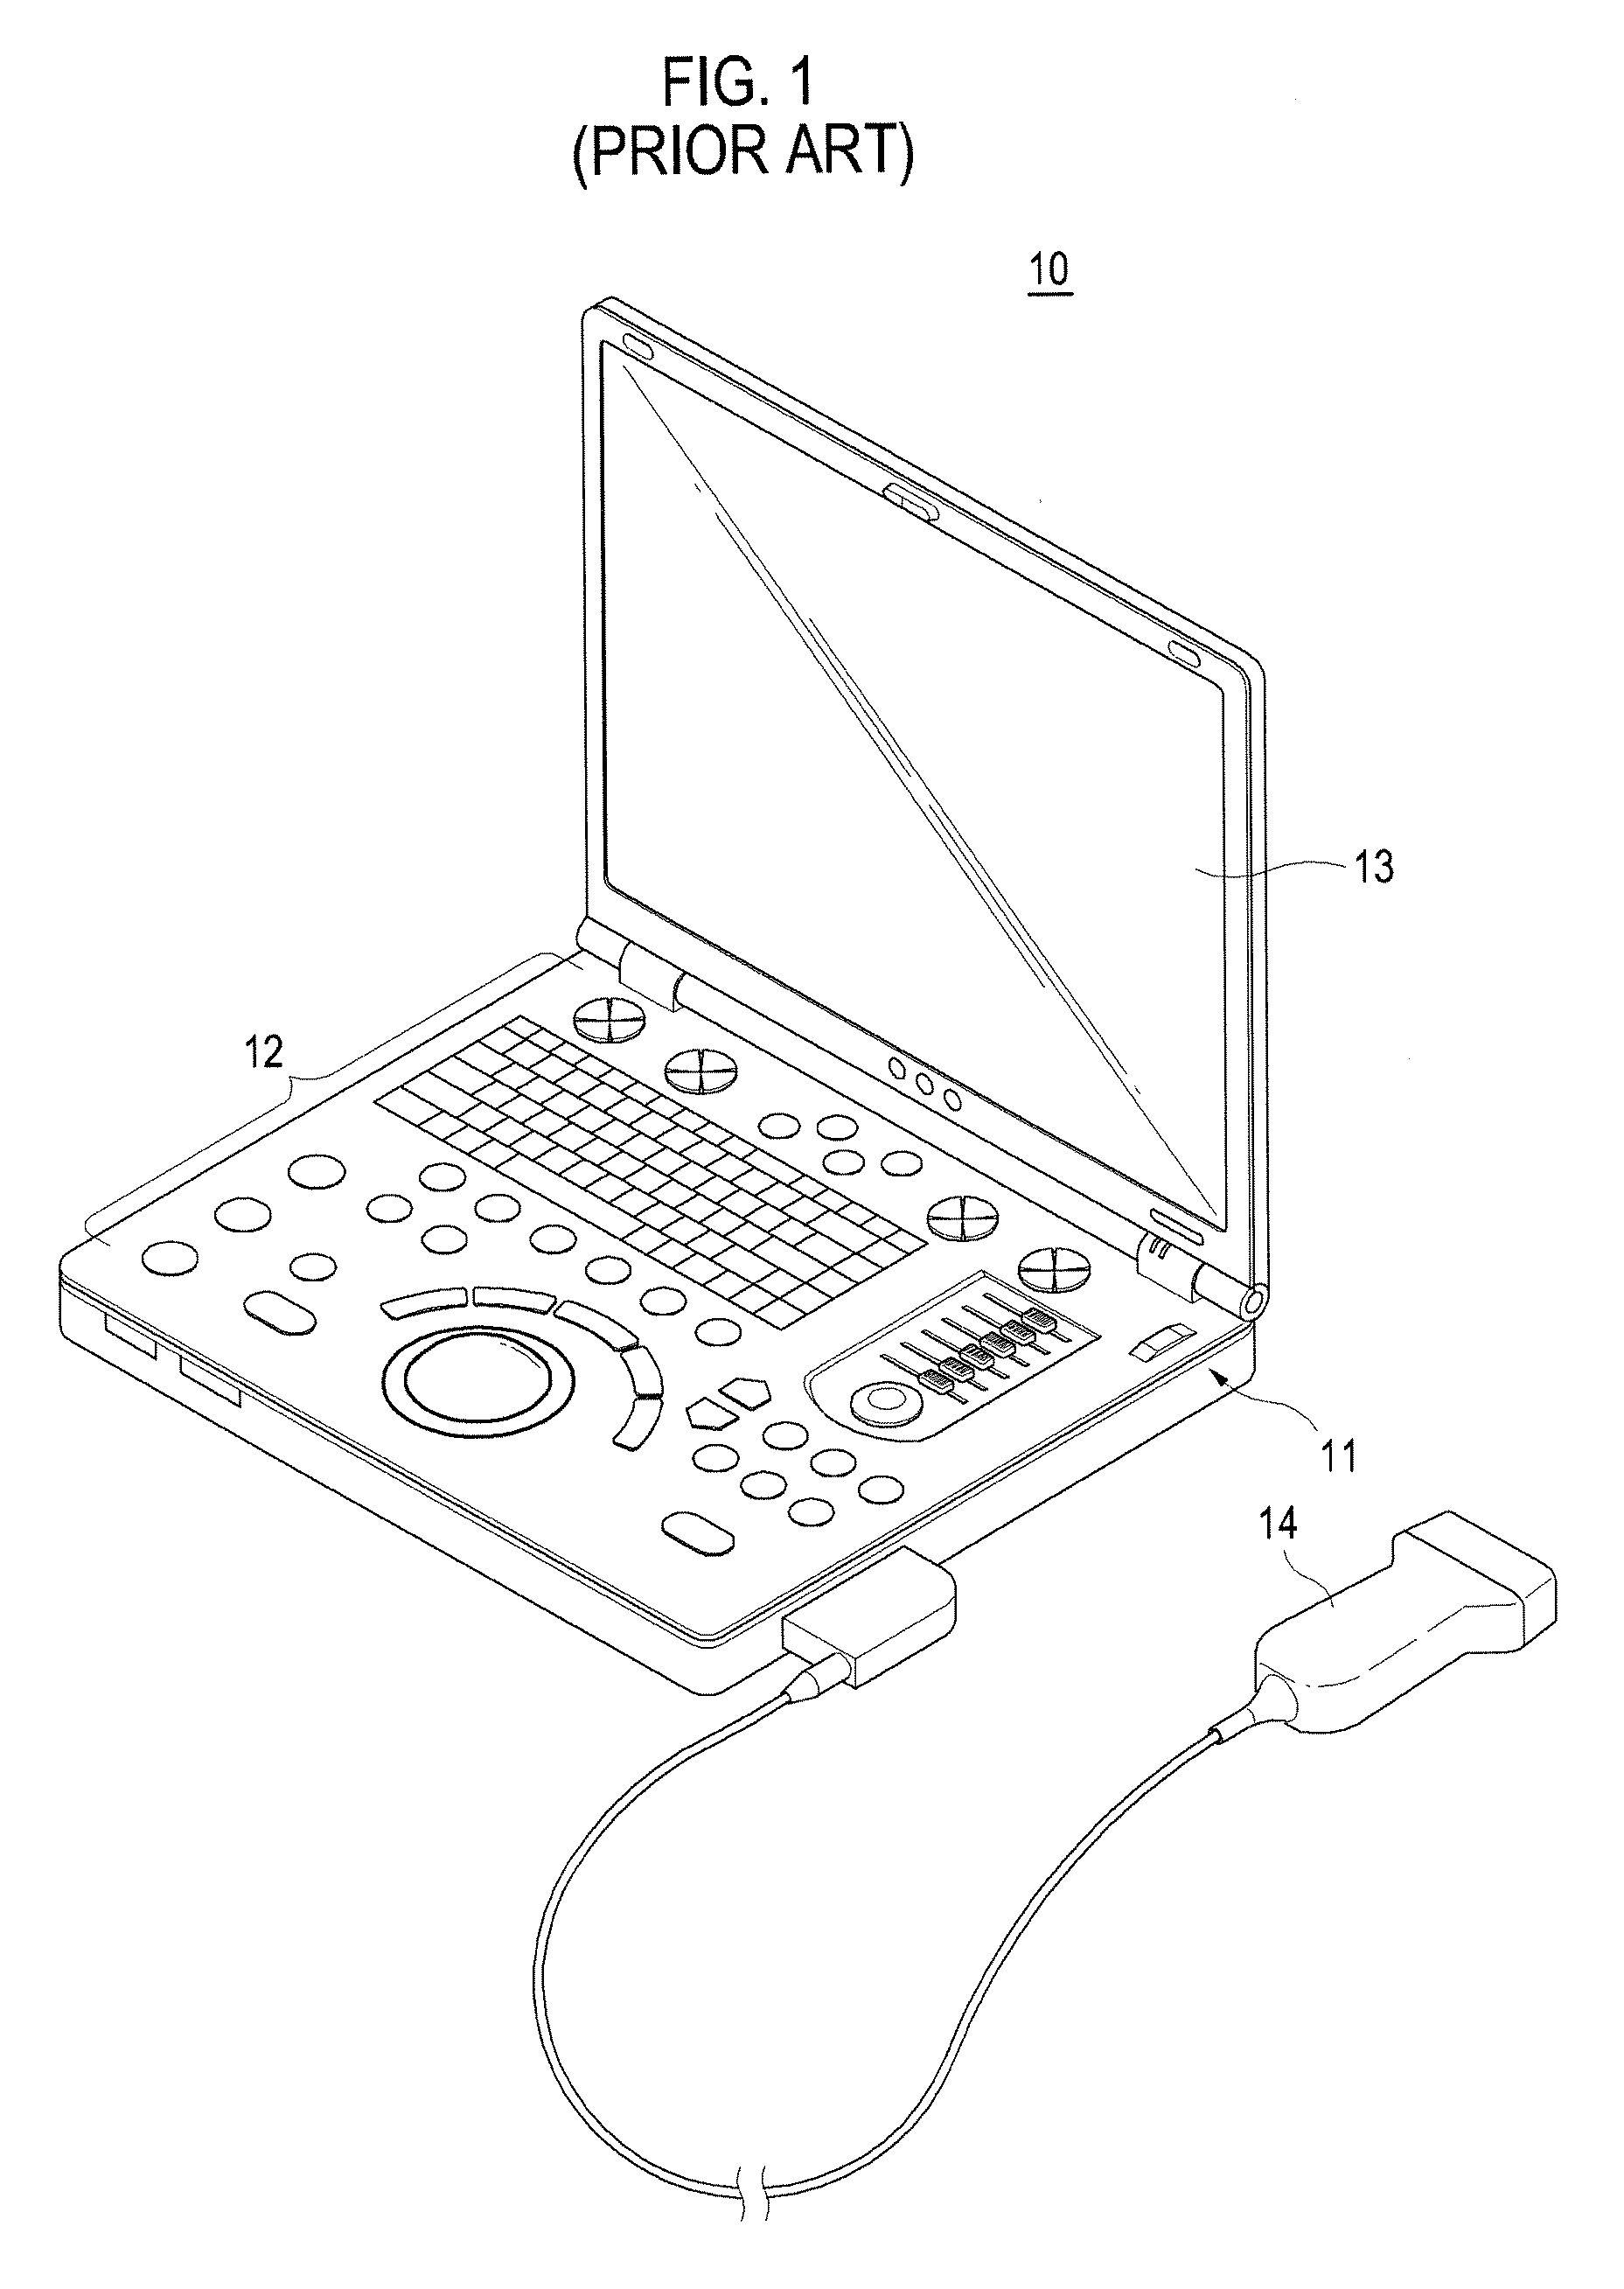 Portable ultrasound system